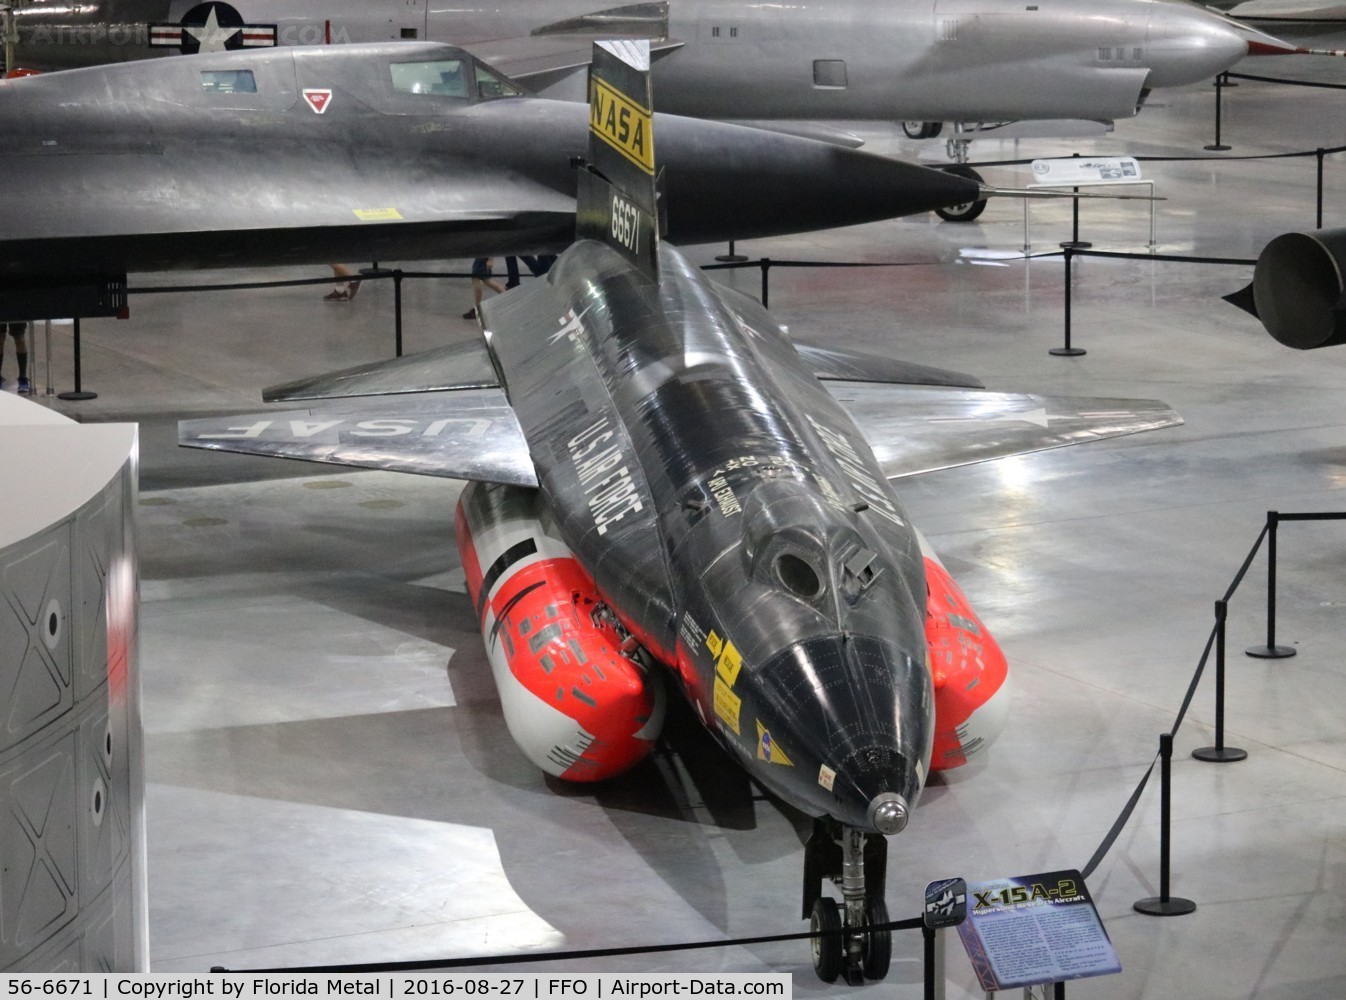 56-6671, 1956 North American X-15A-2 C/N 240-2, X-15A